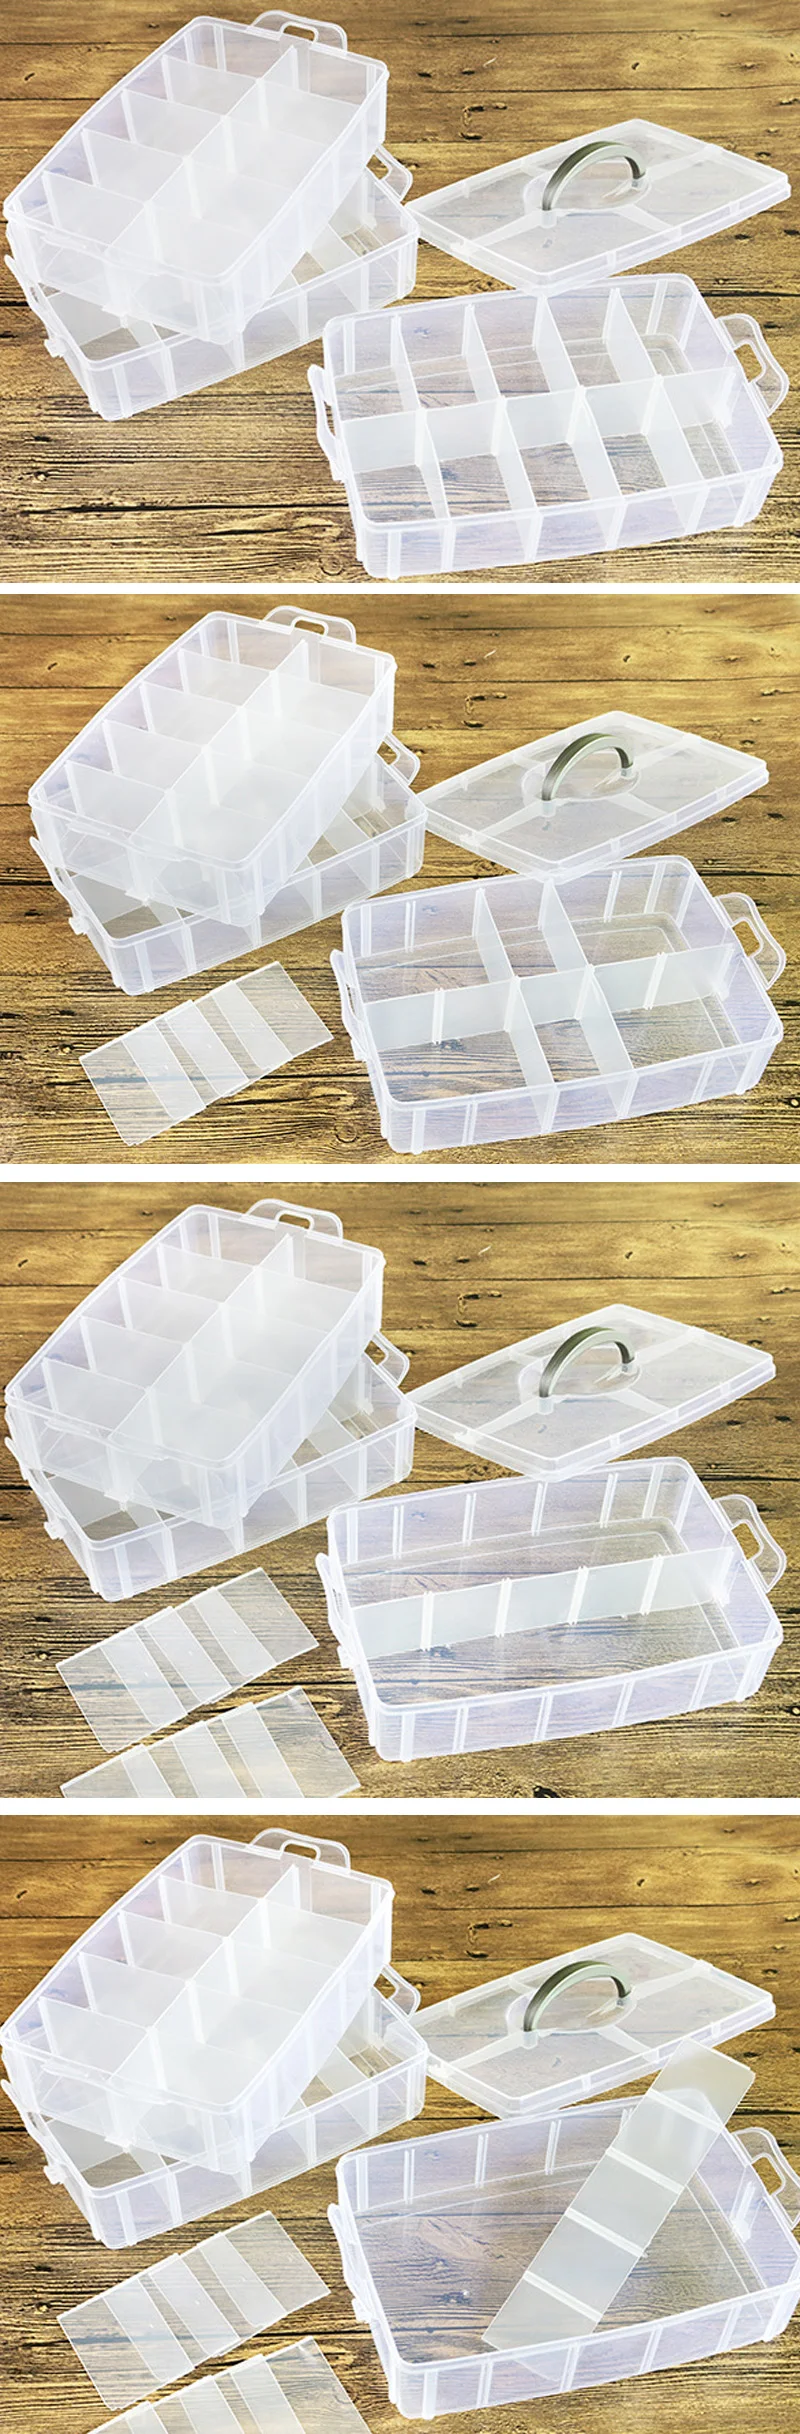 3 слоя Большой размер 30 сетки Регулируемый пластиковый ящик для хранения Чехол держатель новые коробки для хранения ювелирных изделий макияж Органайзер игрушки Органайзер